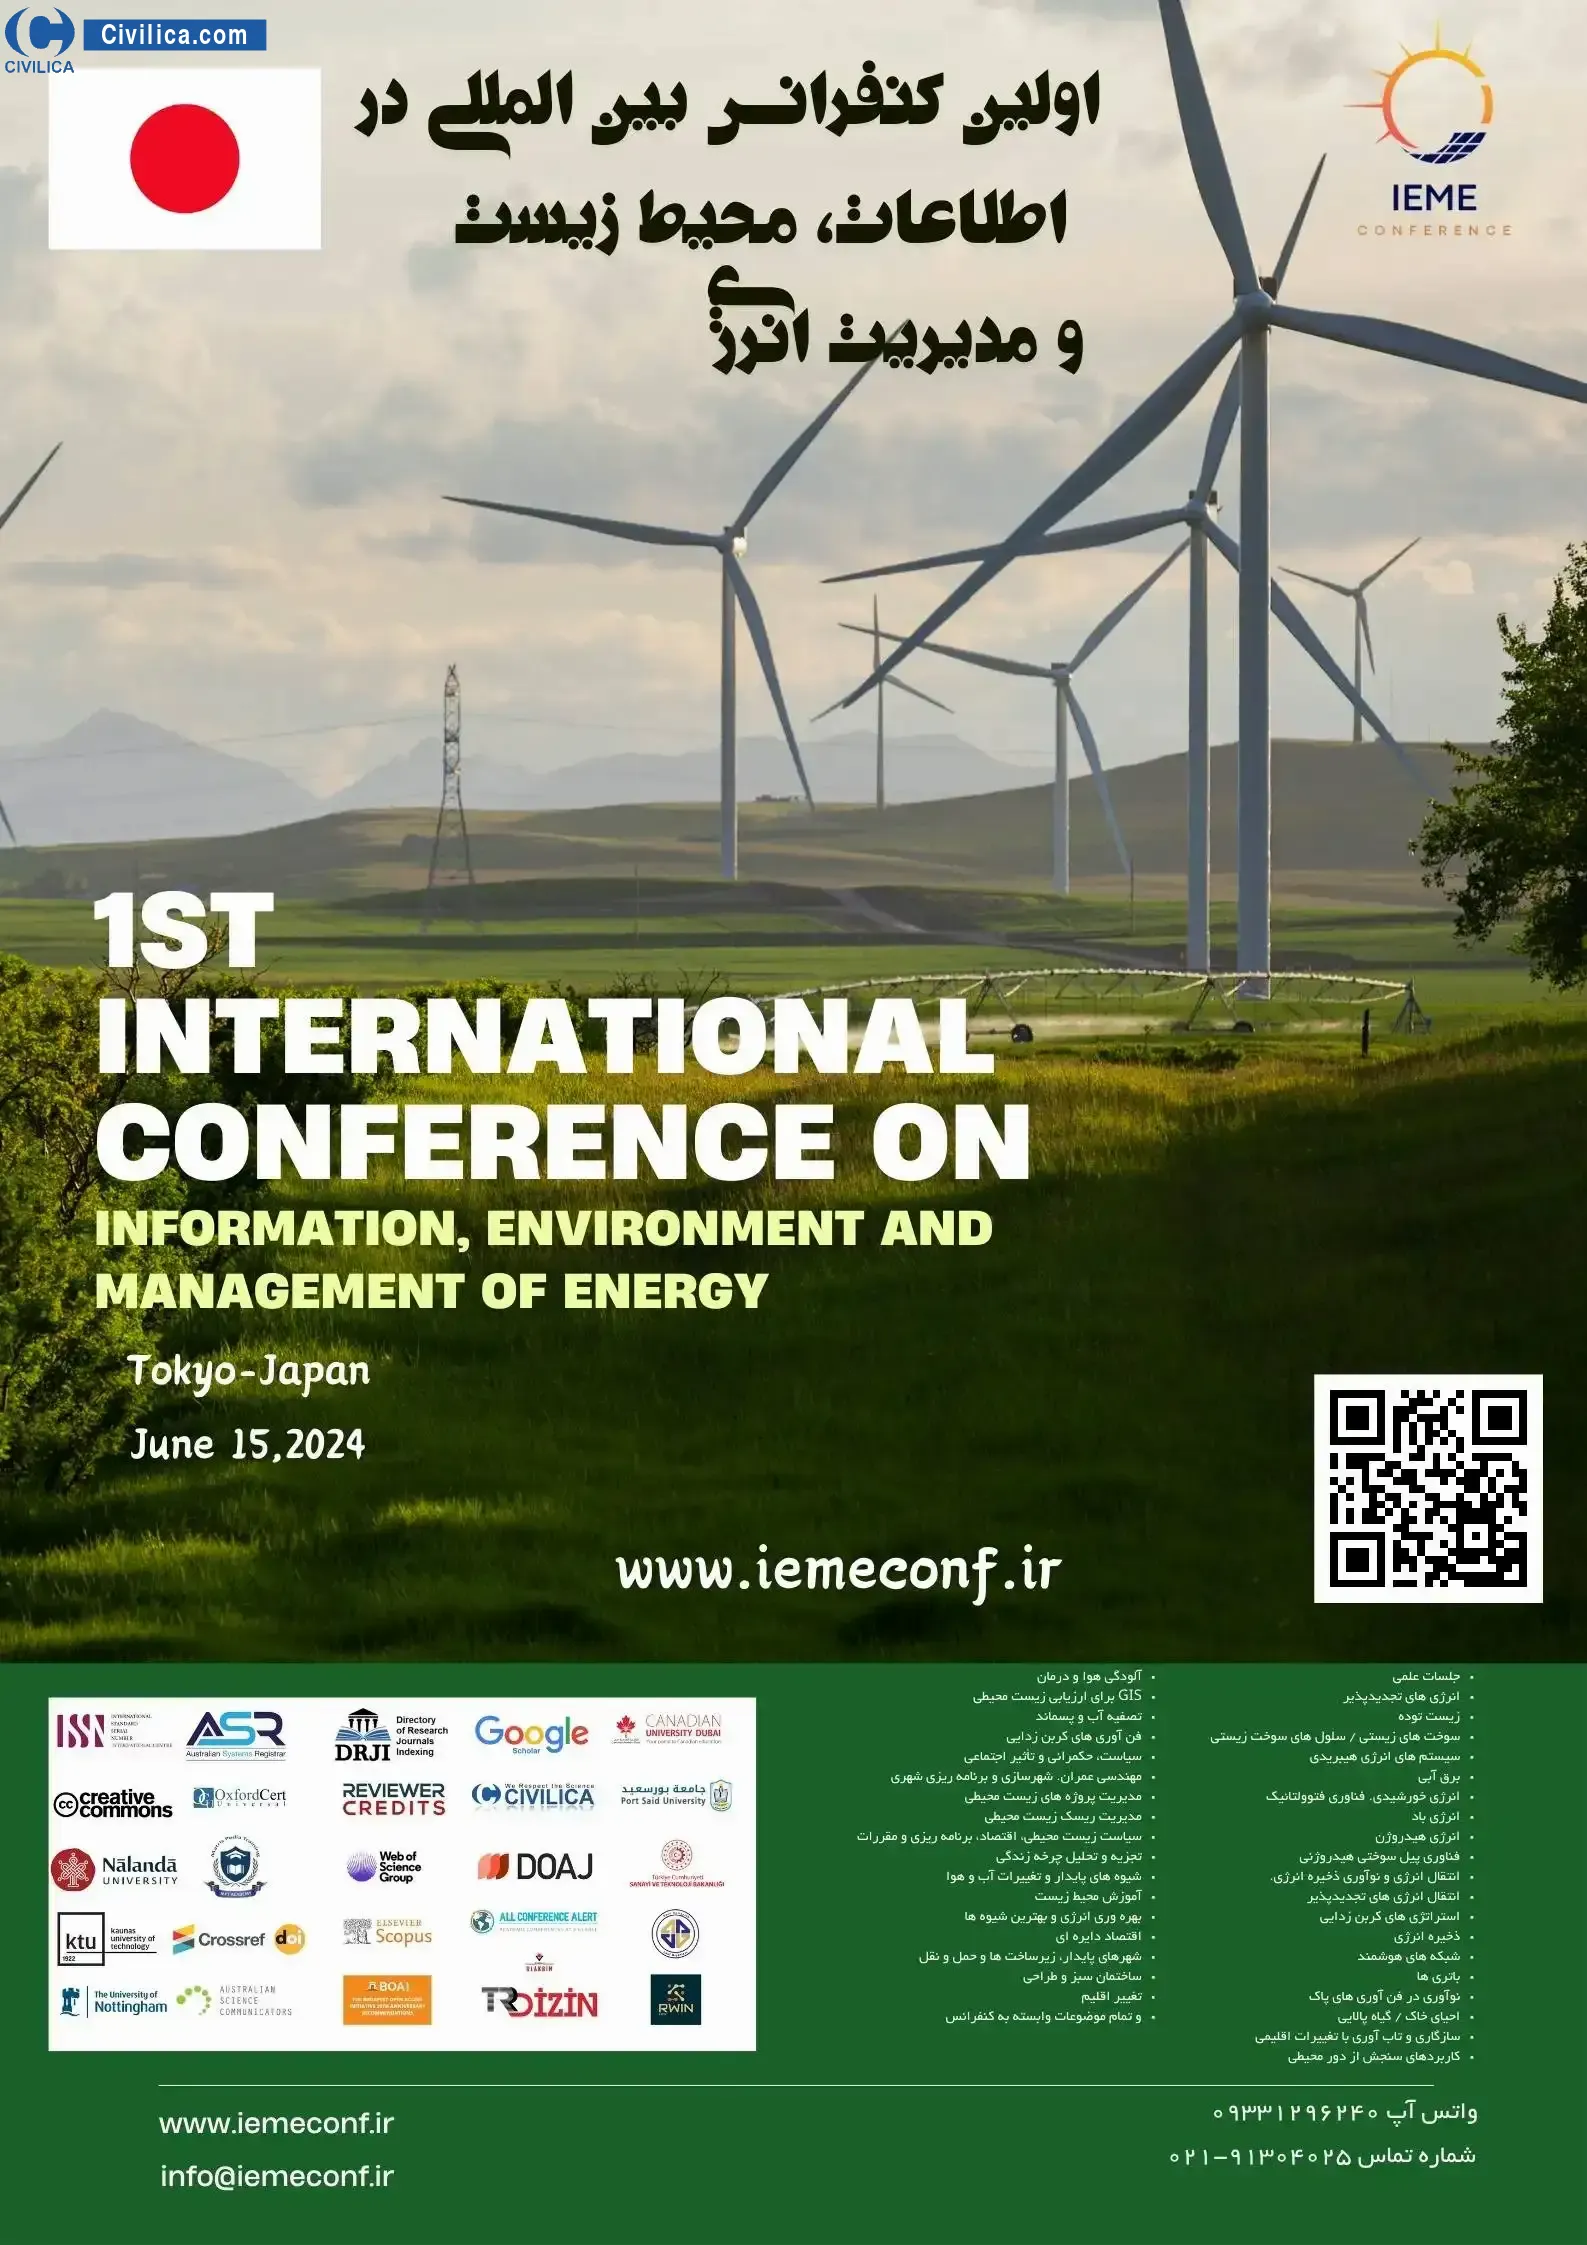 فراخوان مقاله اولین کنفرانس بین المللی در اطلاعات، محیط زیست و مدیریت انرژی